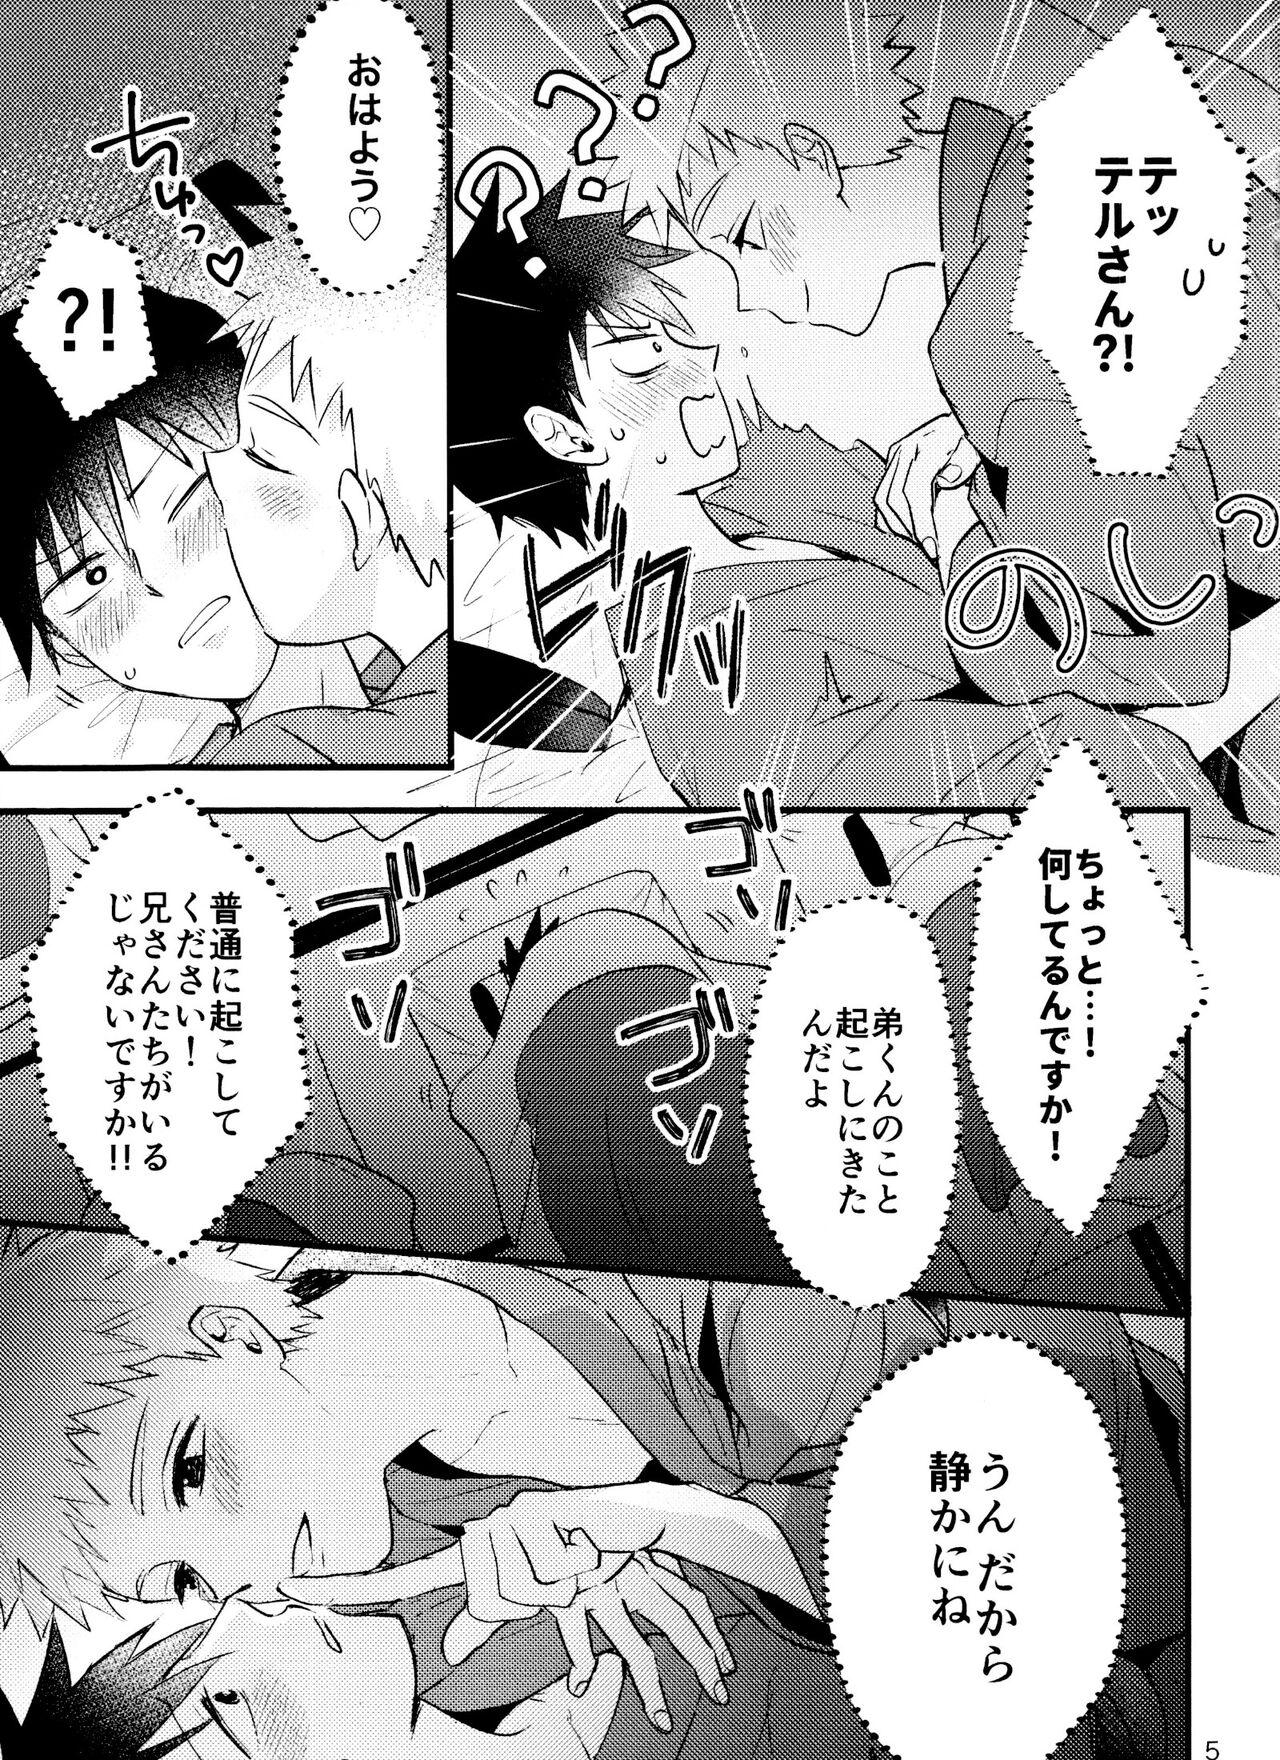 Massive Son'na tsumori janain desu! - Mob psycho 100 Gay Group - Page 4